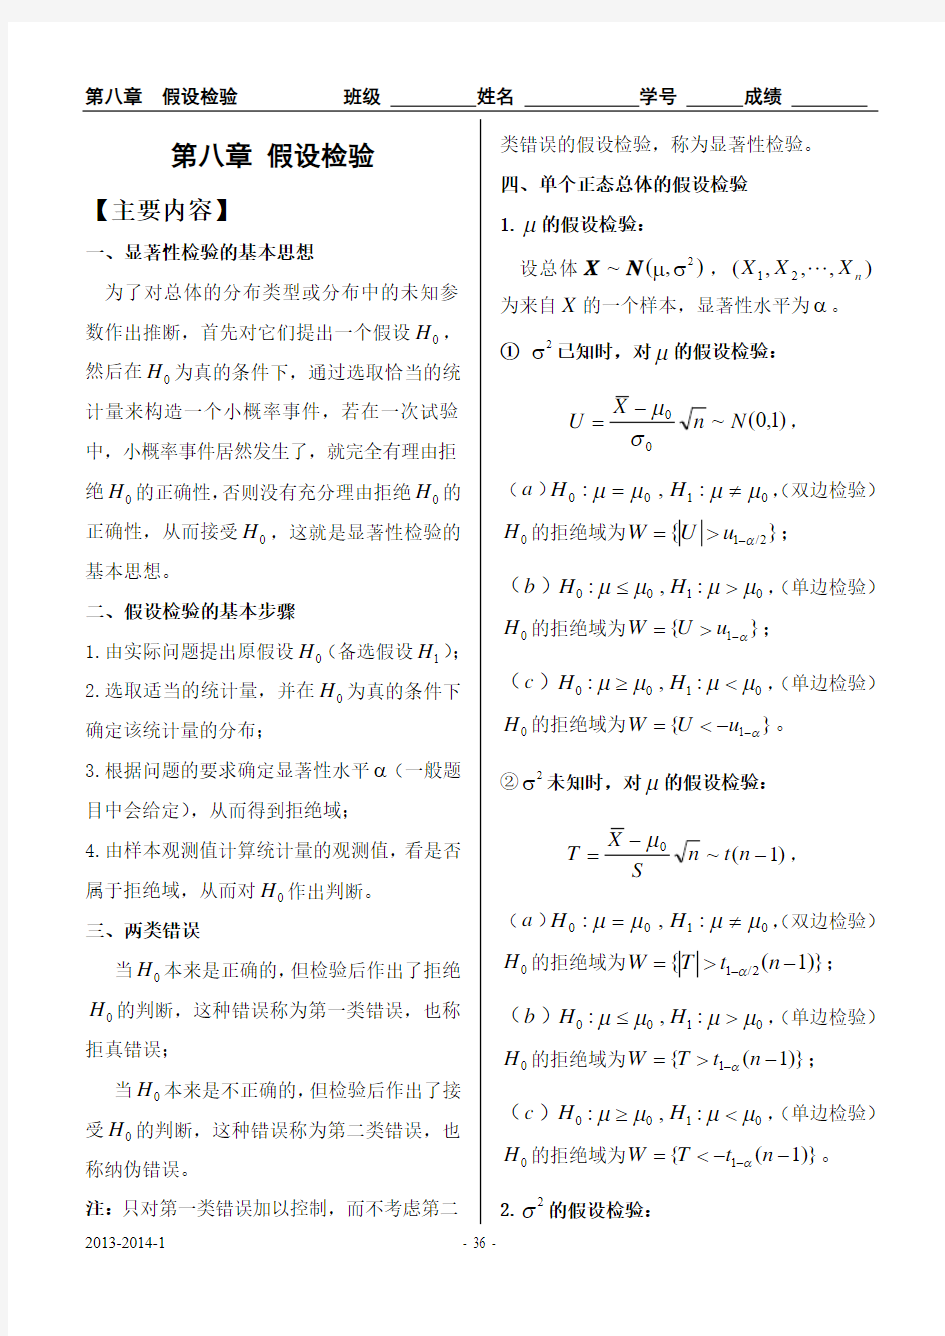 中北大学概率统计习题册第八章完整答案(详解)